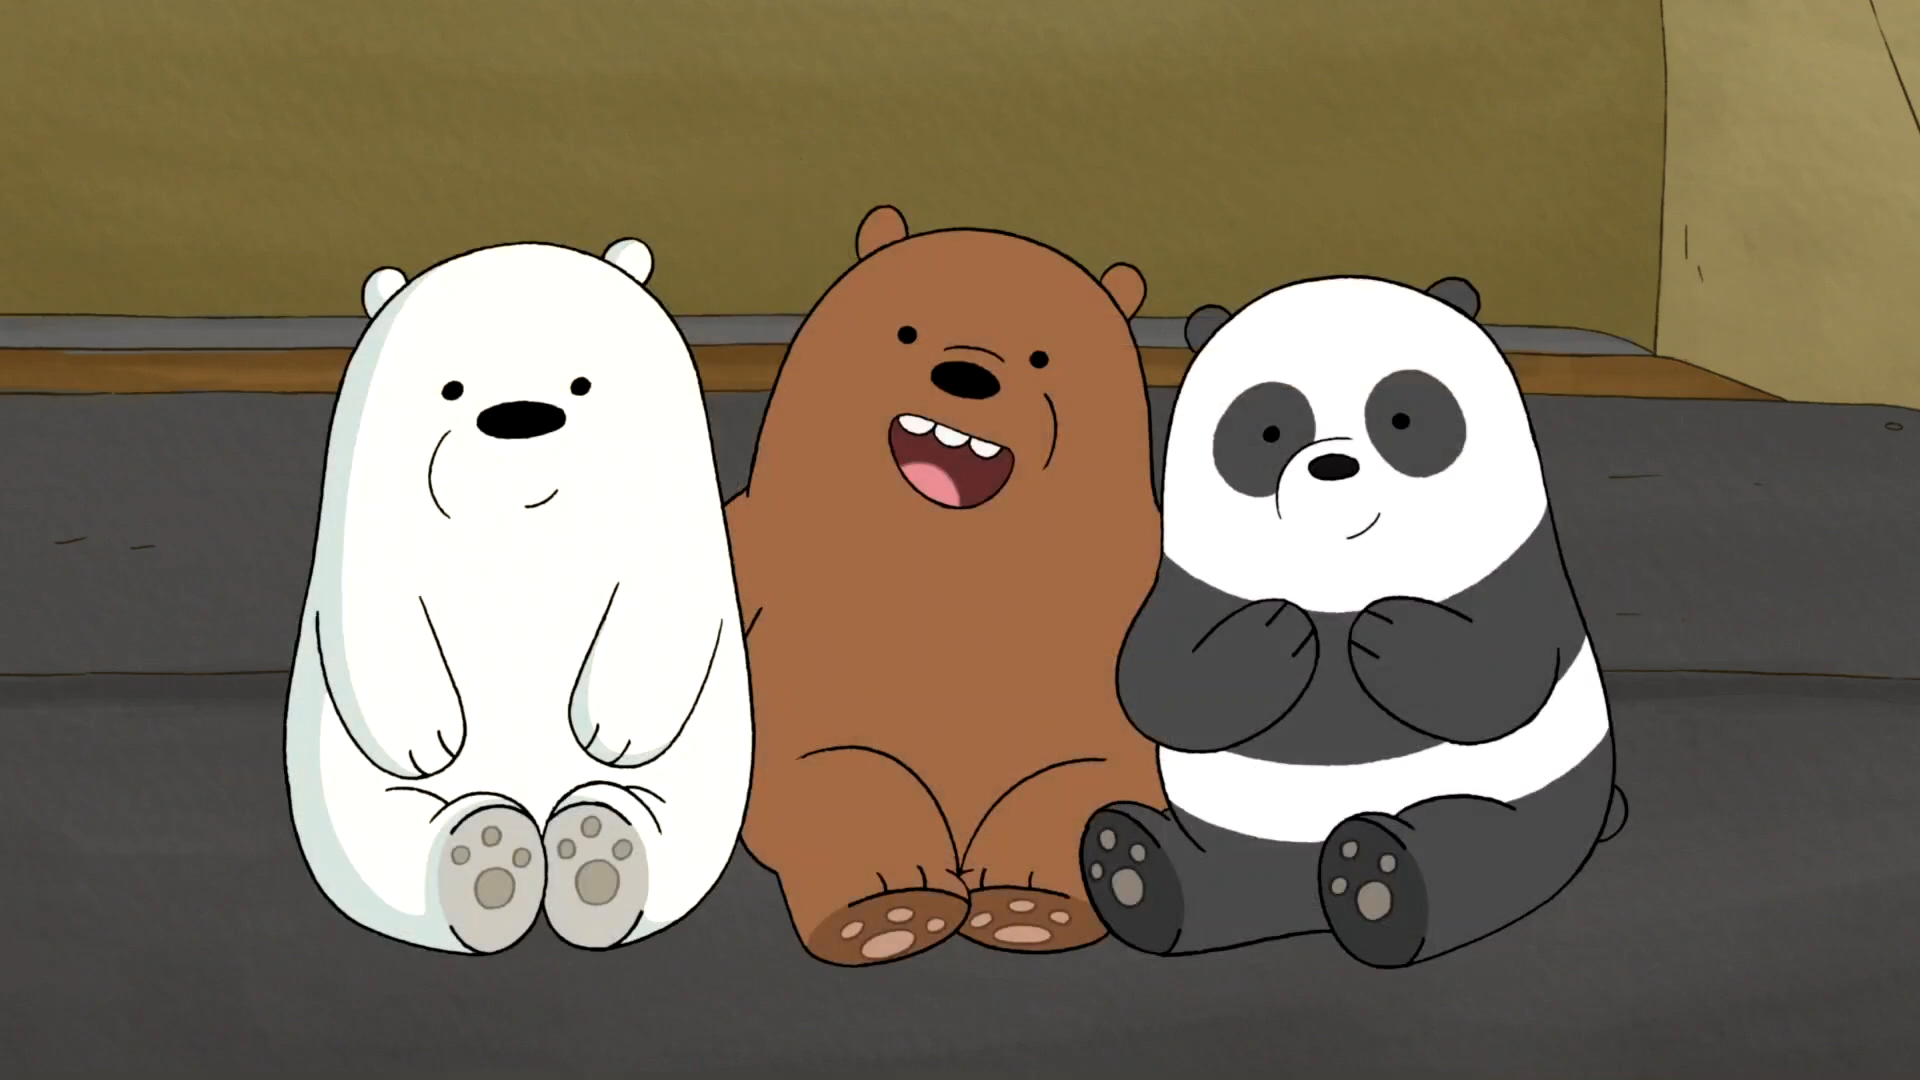 三只熊 - 堆糖，美图壁纸兴趣社区